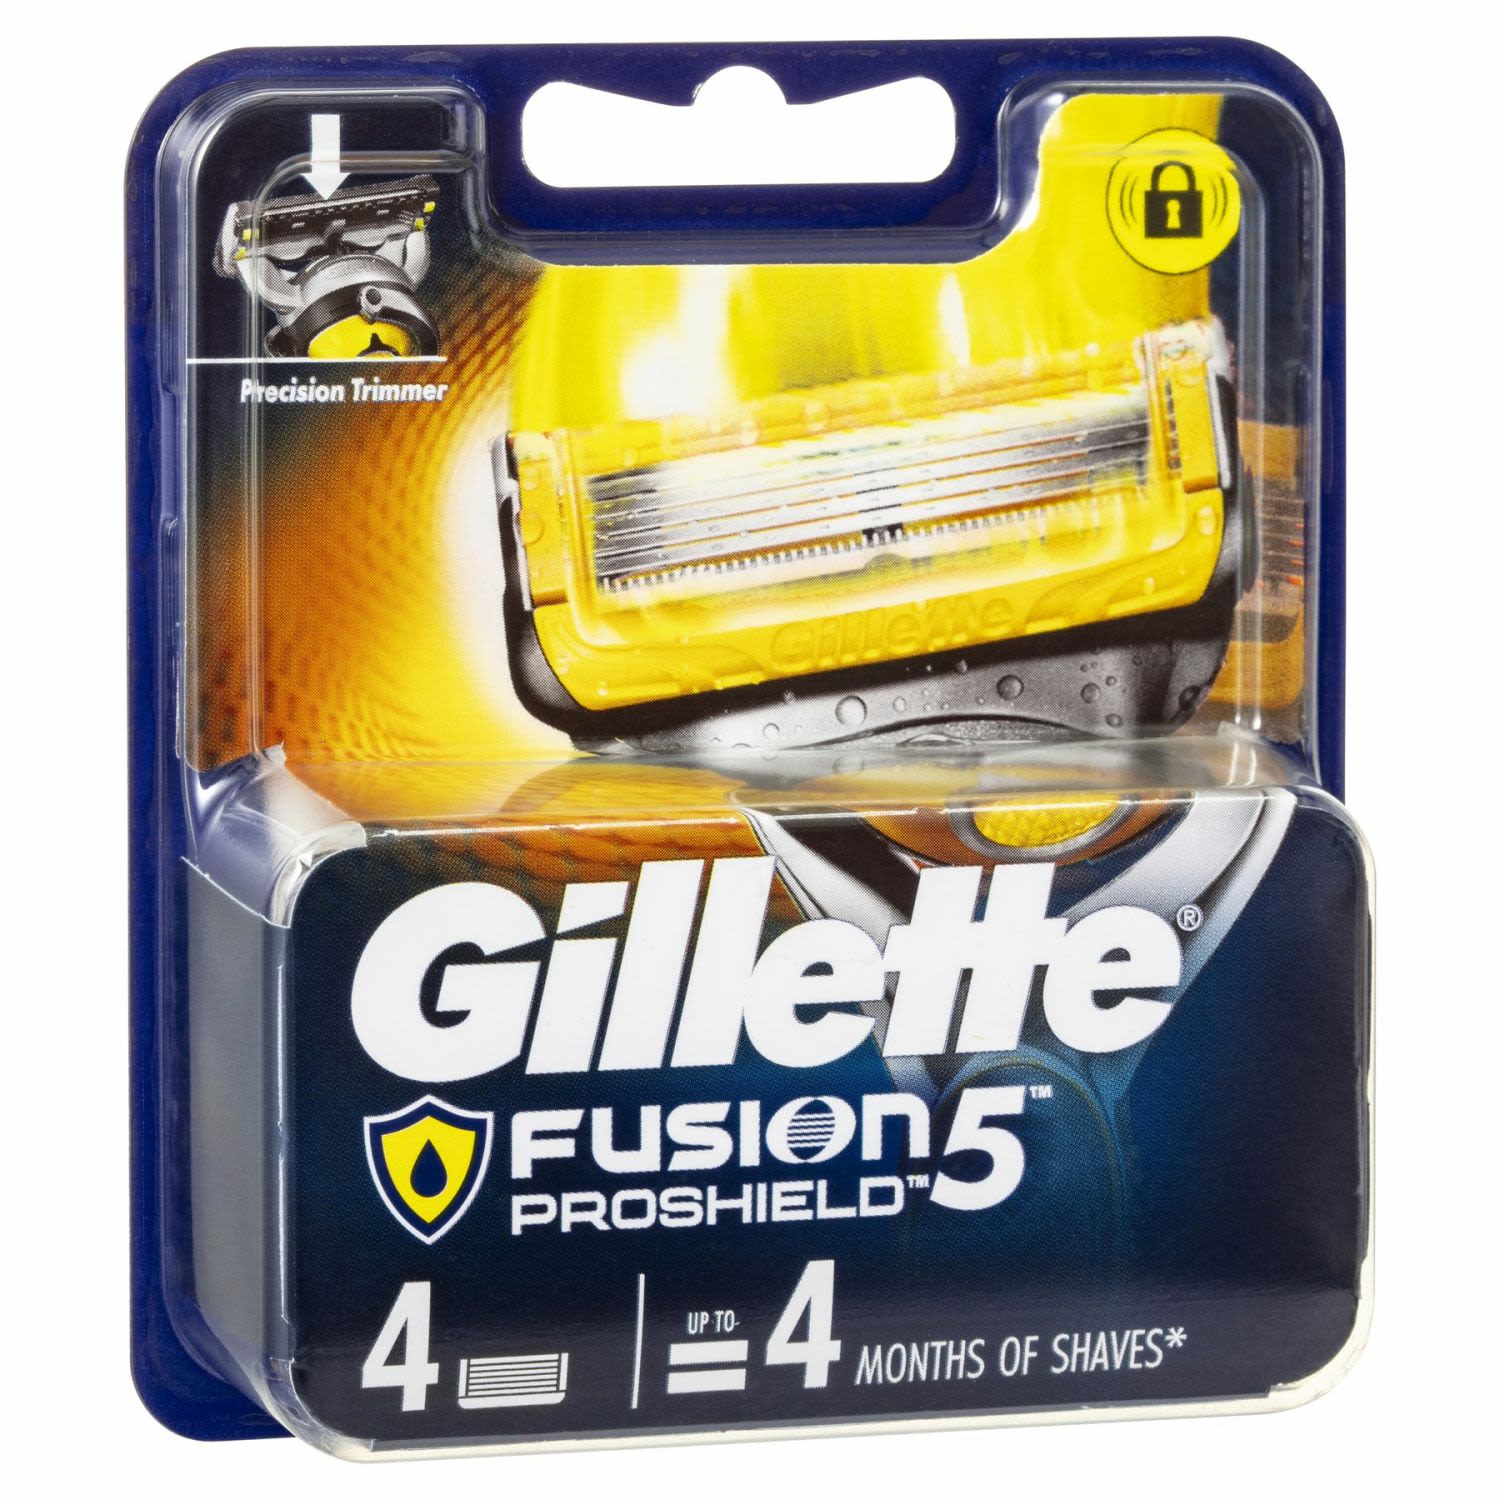 Gillette Fusion5 Proshield Cartridges, 4 Each